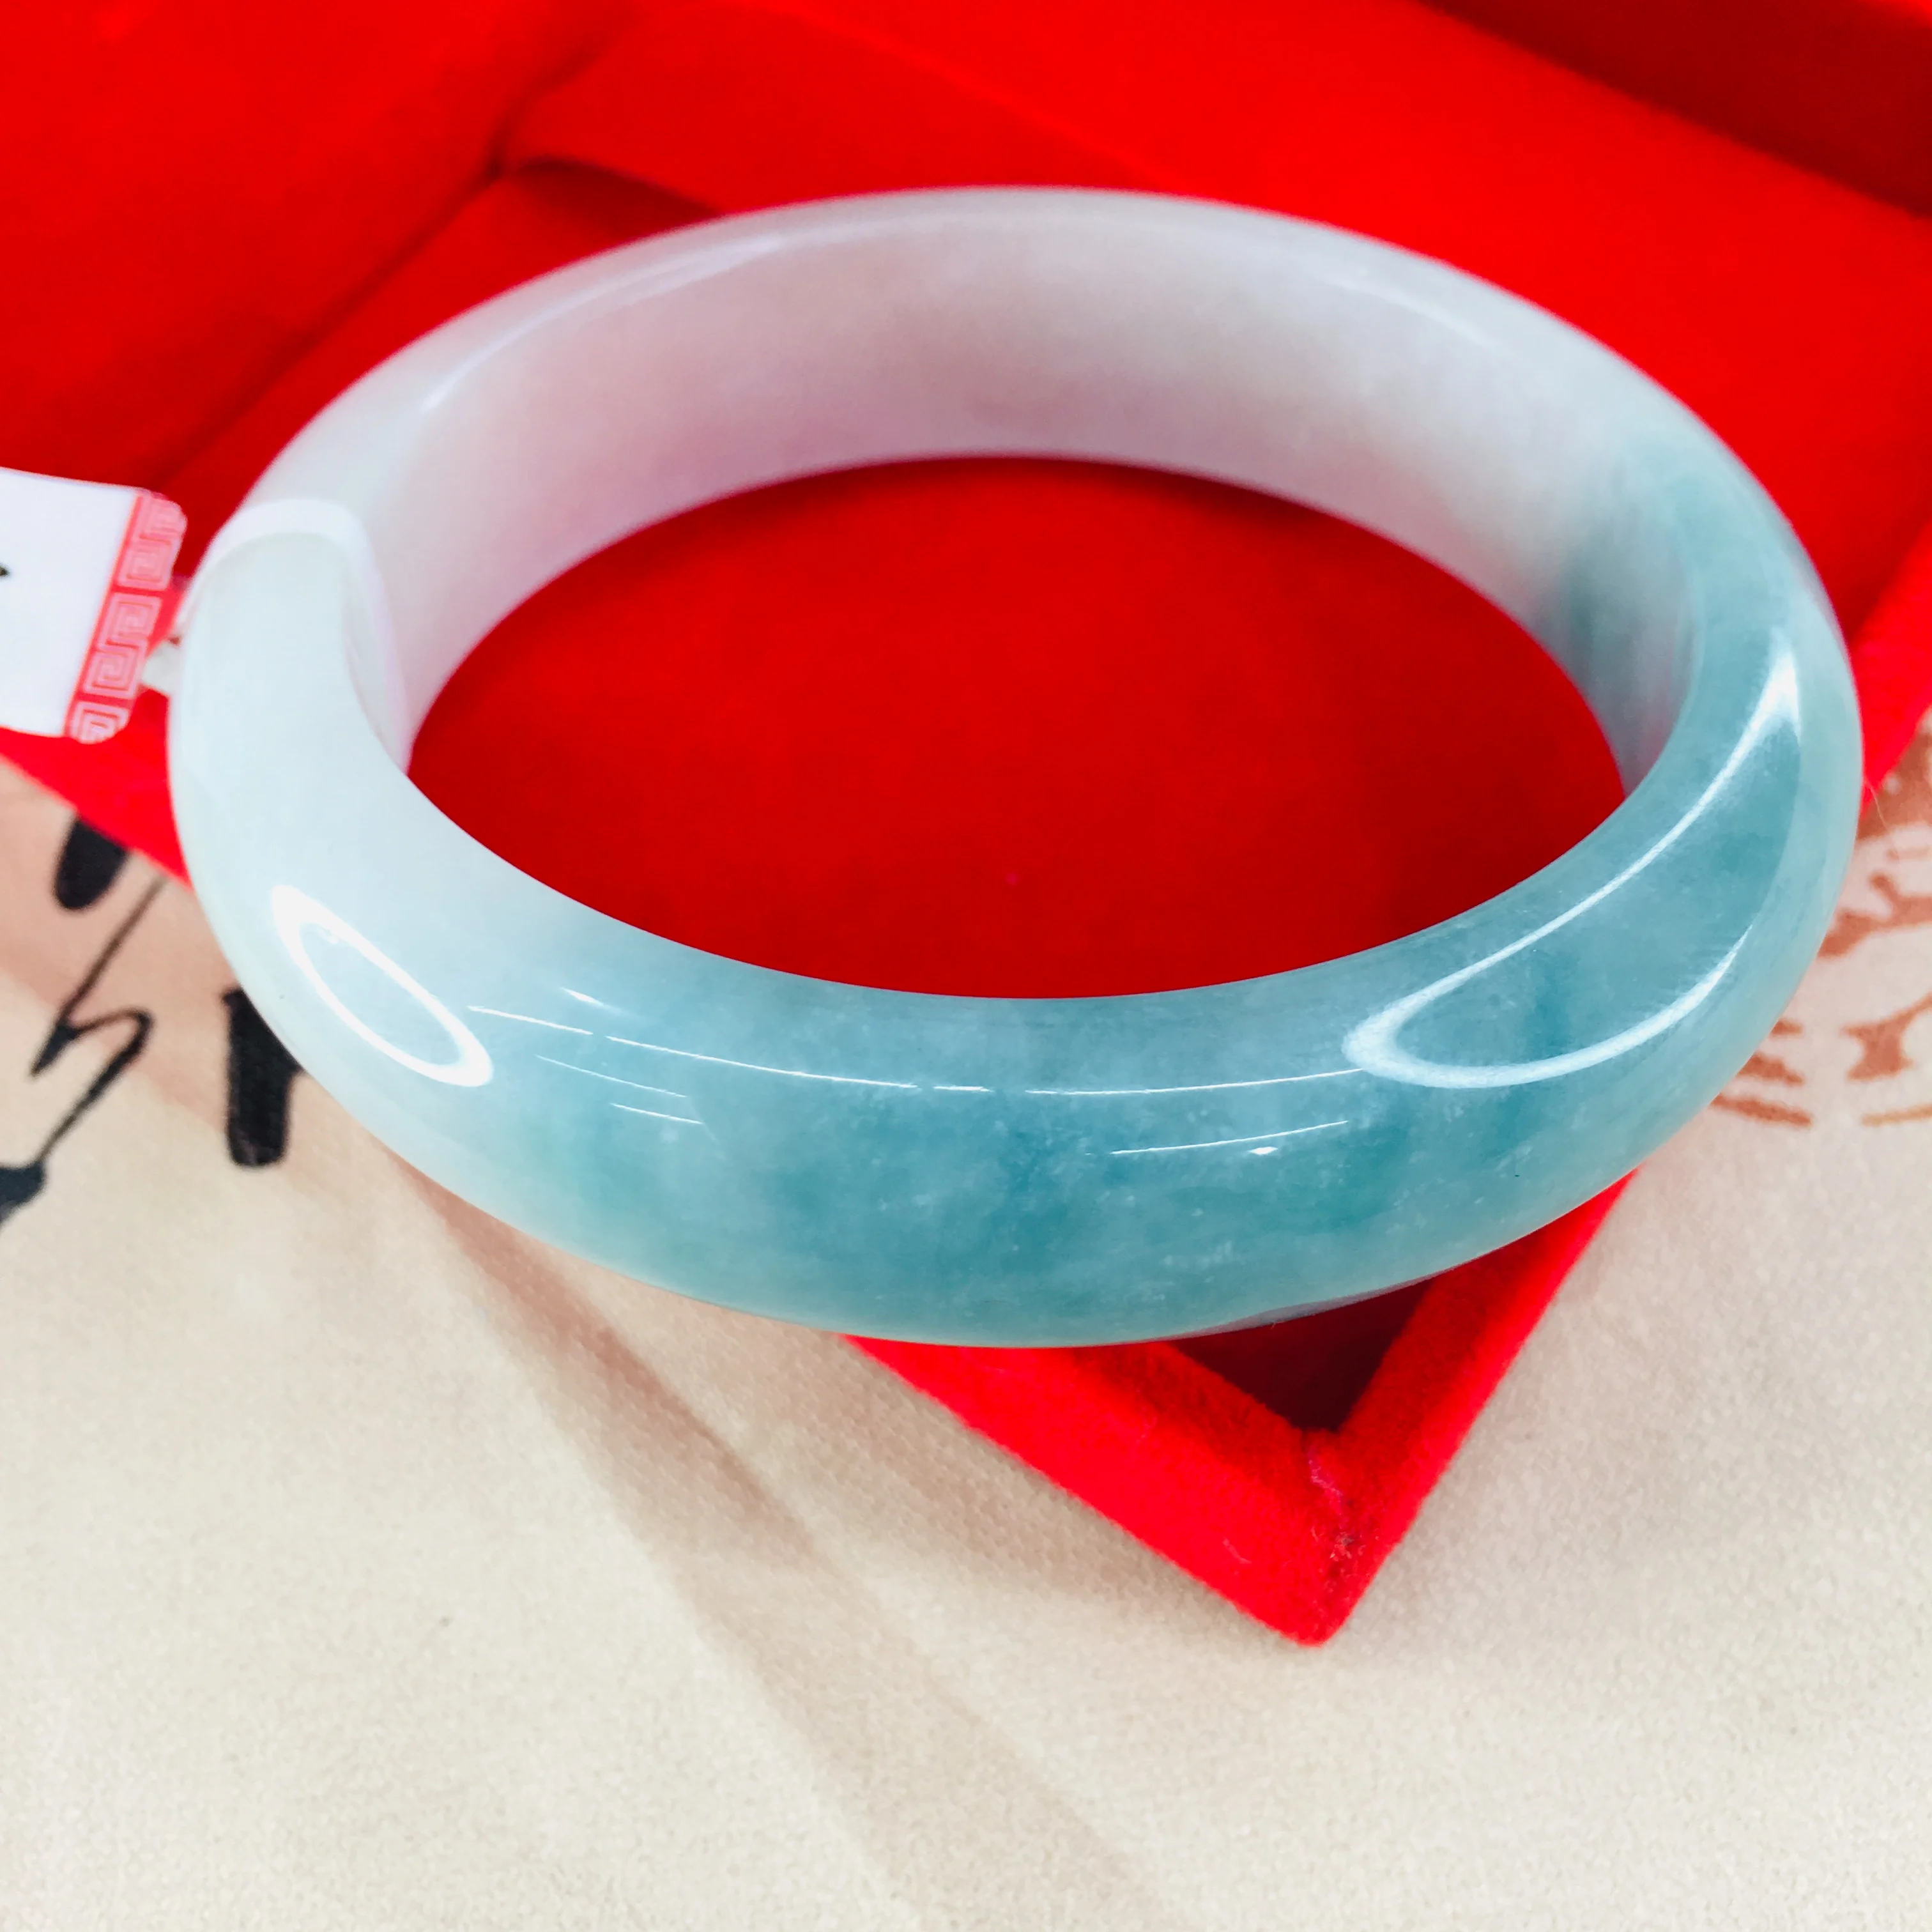 Zheru ювелирные изделия чистый натуральный жадеитовый браслет из натурального прозрачного камня нижней голубой воды 54-62 мм двойной цвет женский нефритовый браслет отправить Certifi